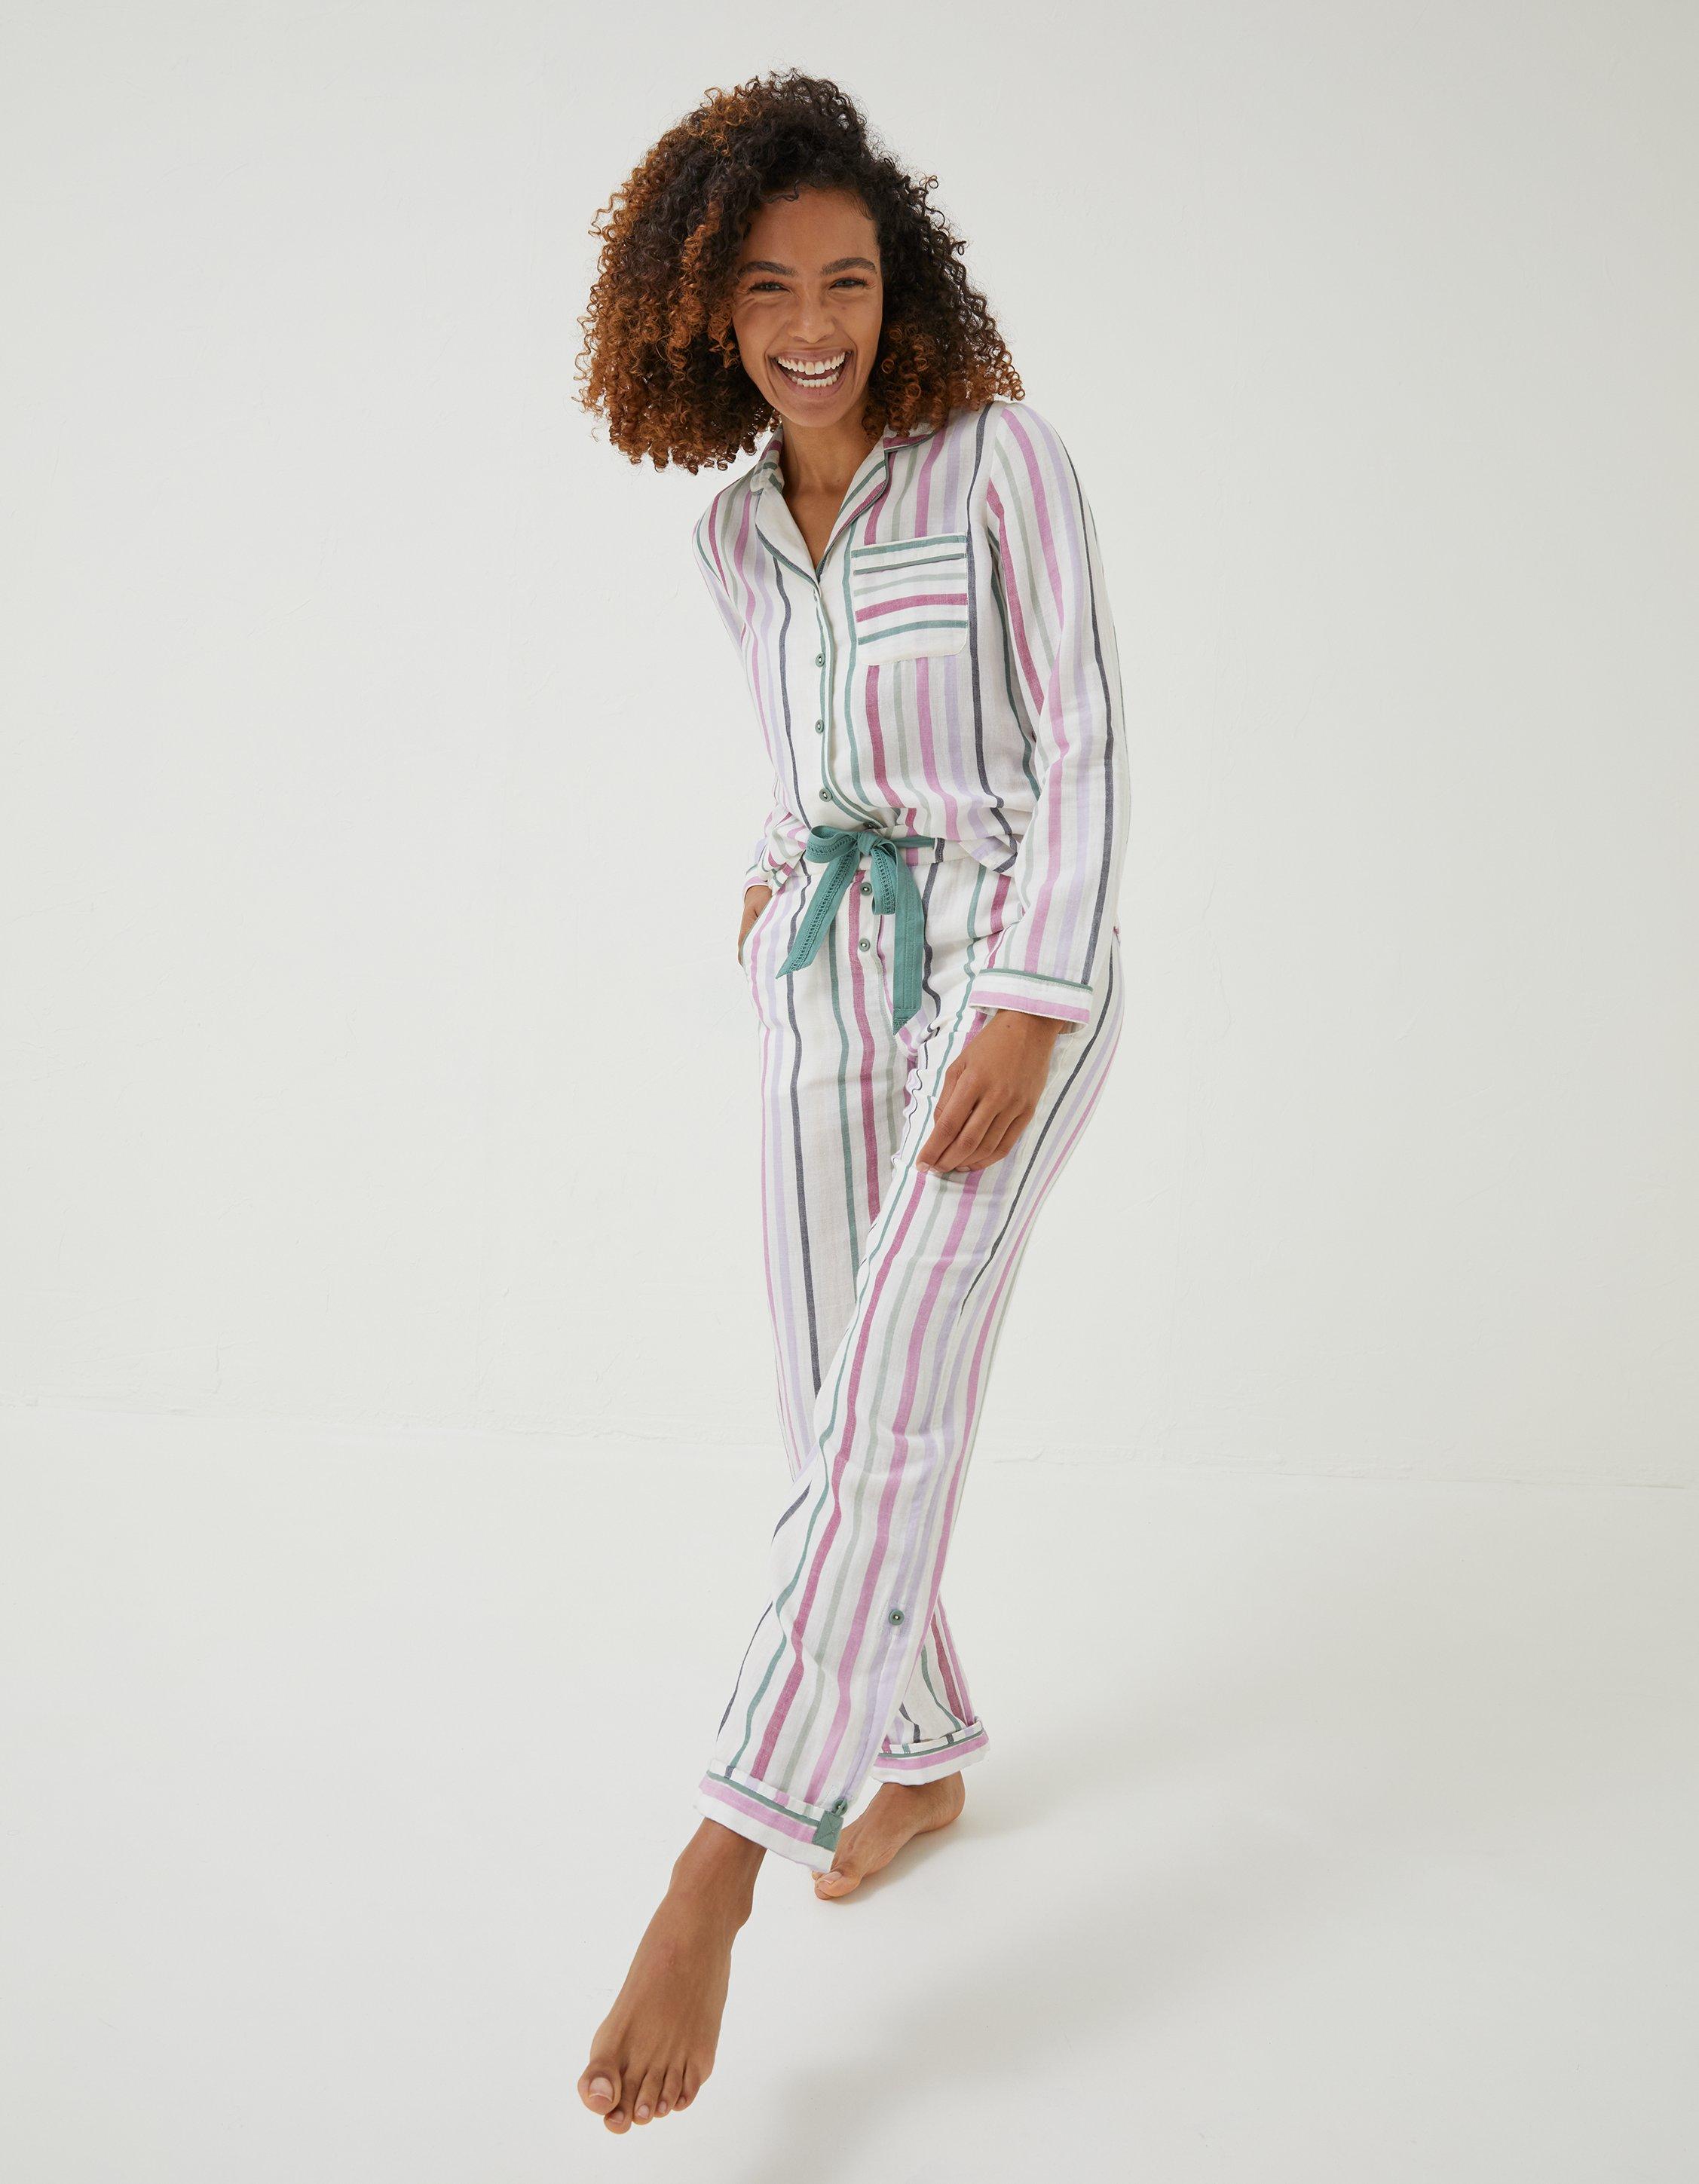 Stripe Pj Set, Nightwear & Pajamas